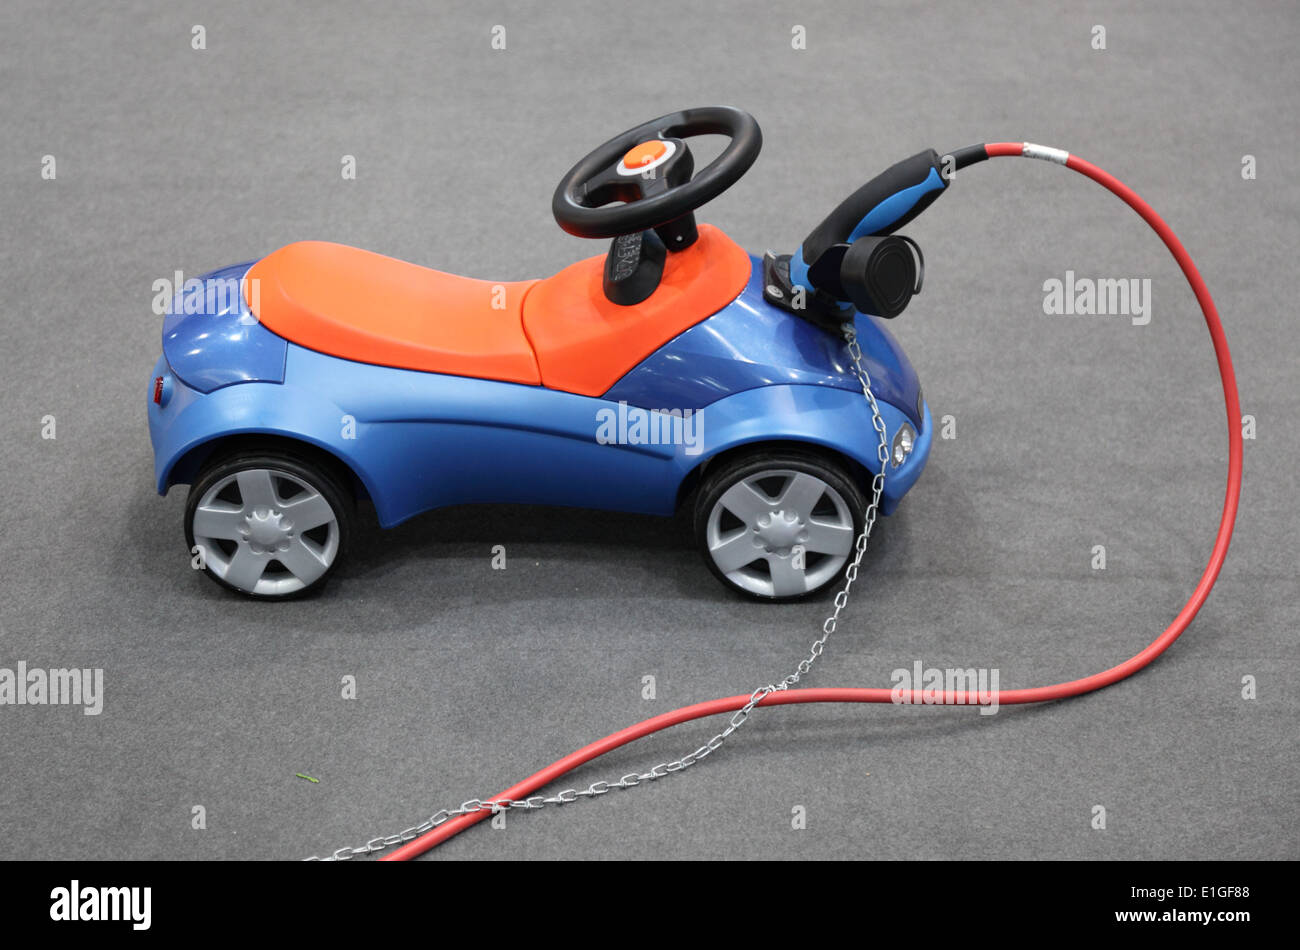 https://c8.alamy.com/compfr/e1gf88/bobby-car-electrique-voiture-jouet-pour-les-enfants-e1gf88.jpg